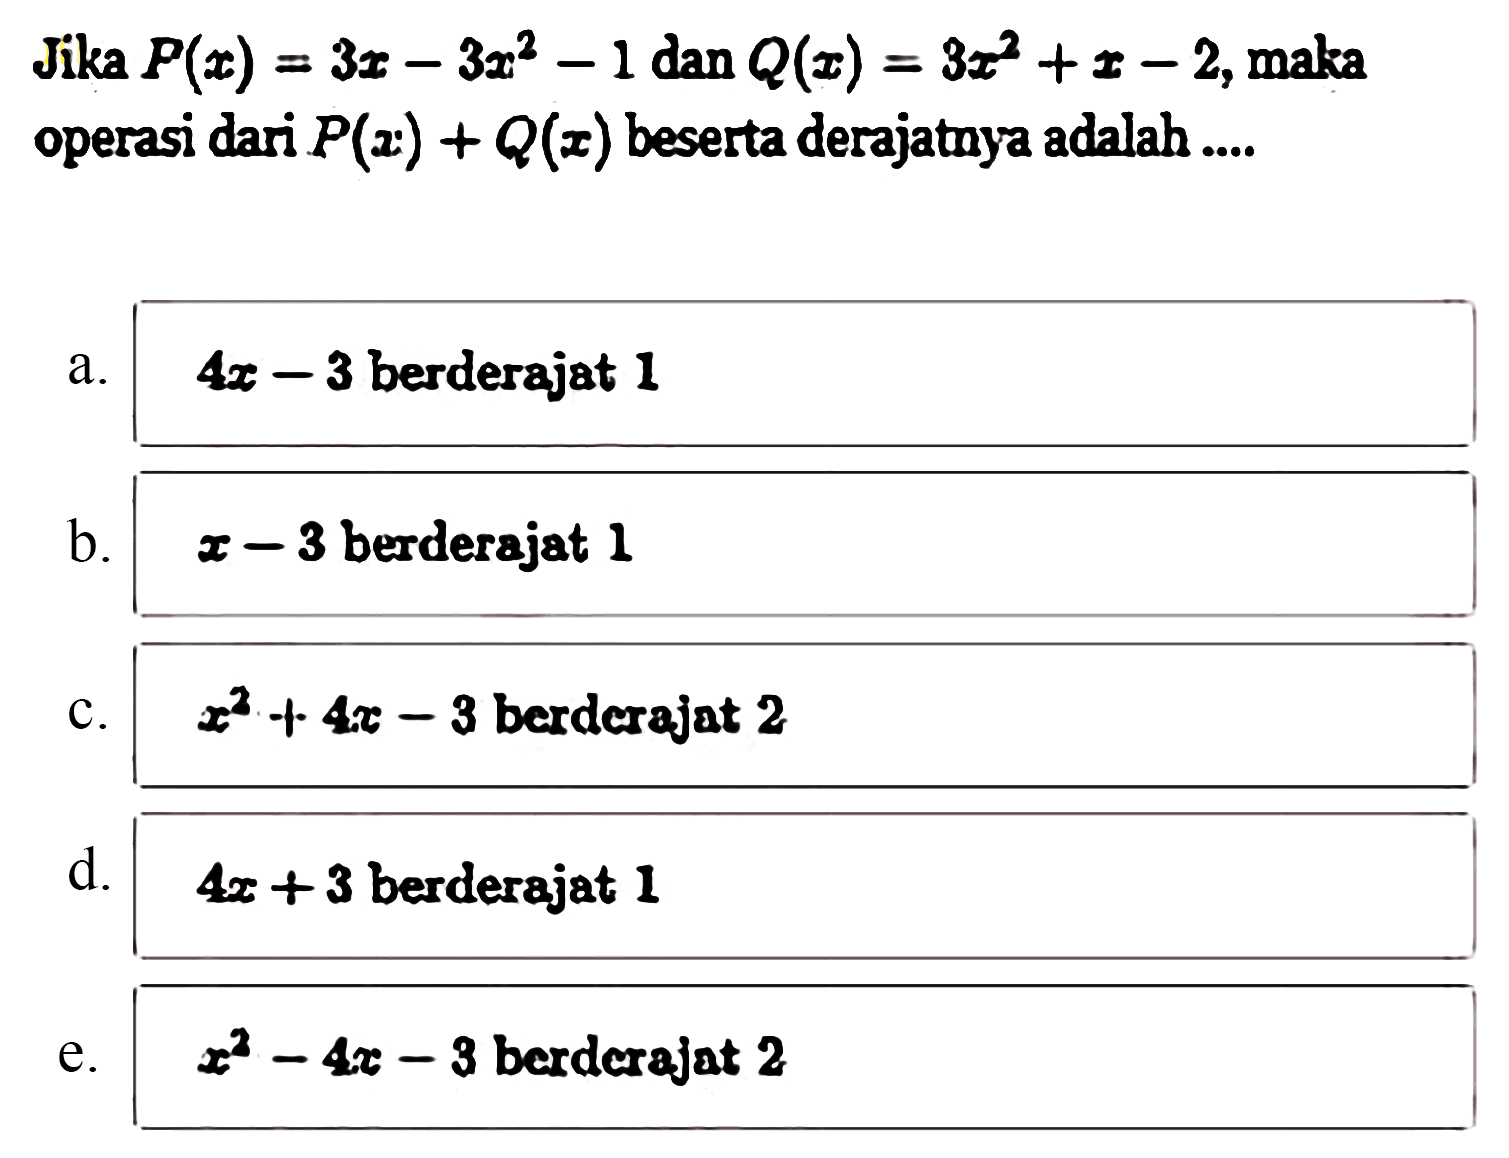 Jika P(x) =3x-3x^2-1 dan Q(x)=3x^2+x-2, maka operasi dari P(x)+Q(x) beserta derajatnya adalah ...